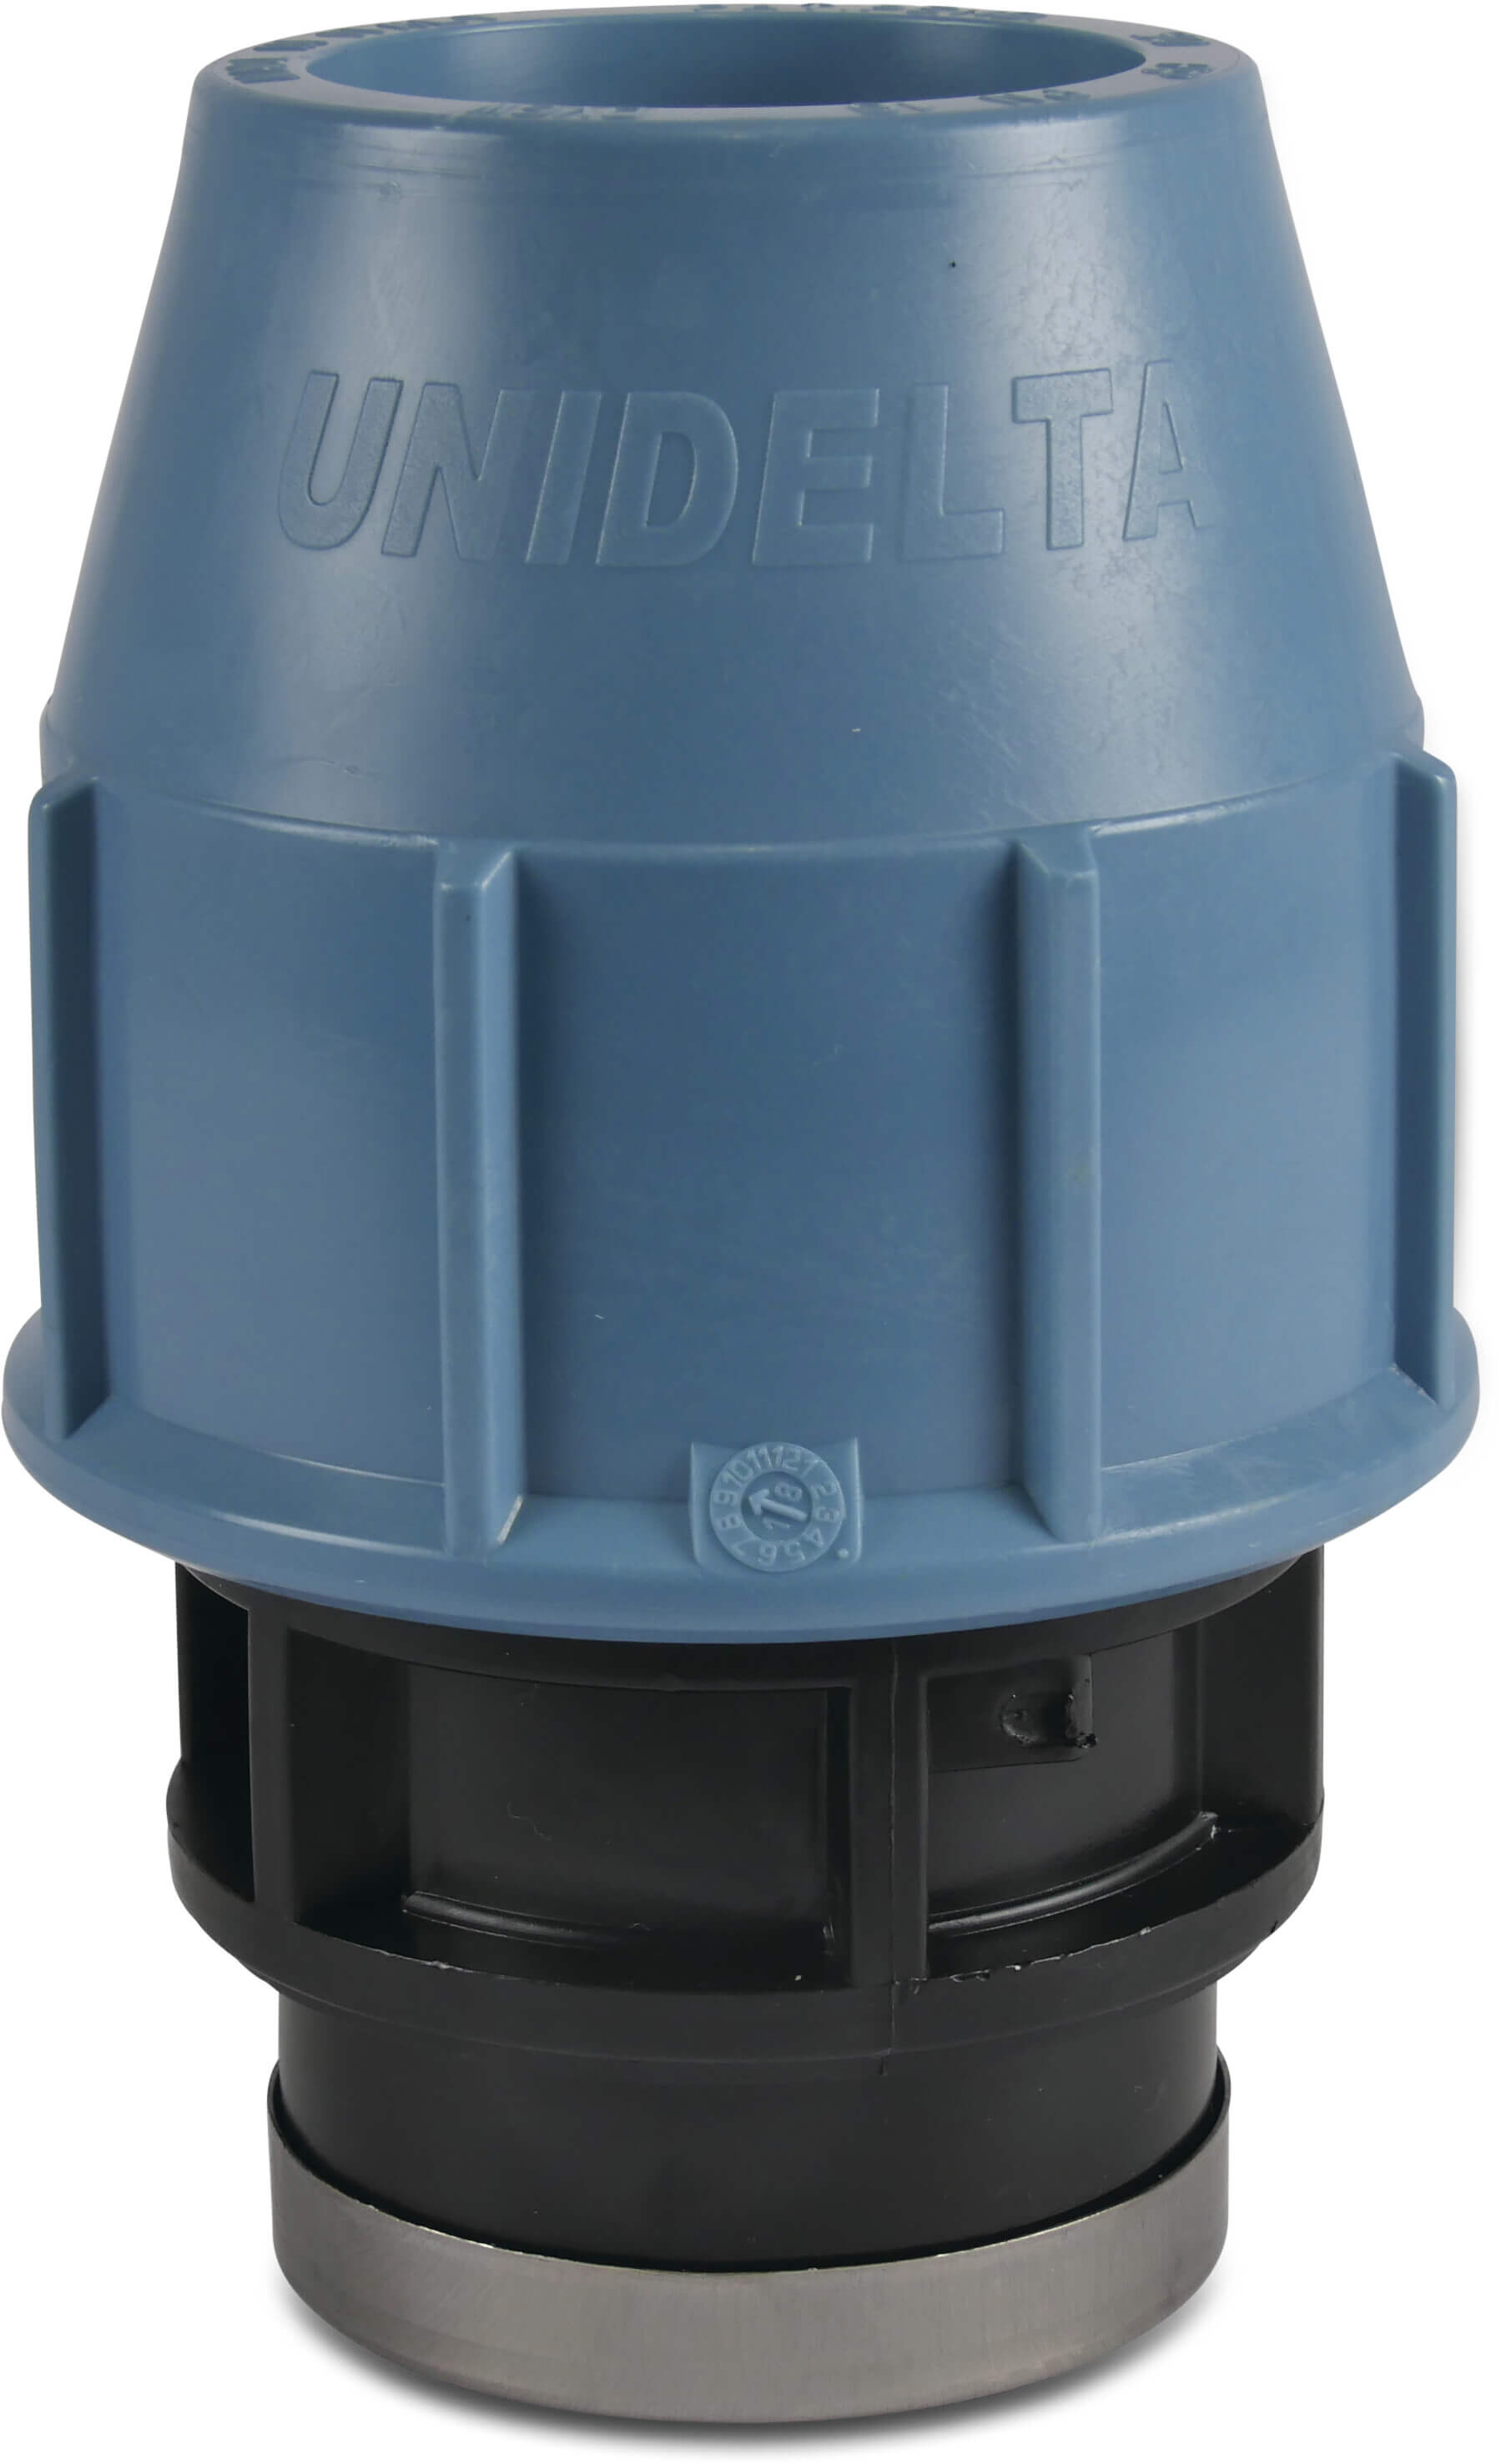 Unidelta Adaptor socket PP 16 mm x 3/4" compression x female thread 16bar black/blue DVGW/KIWA/WRAS